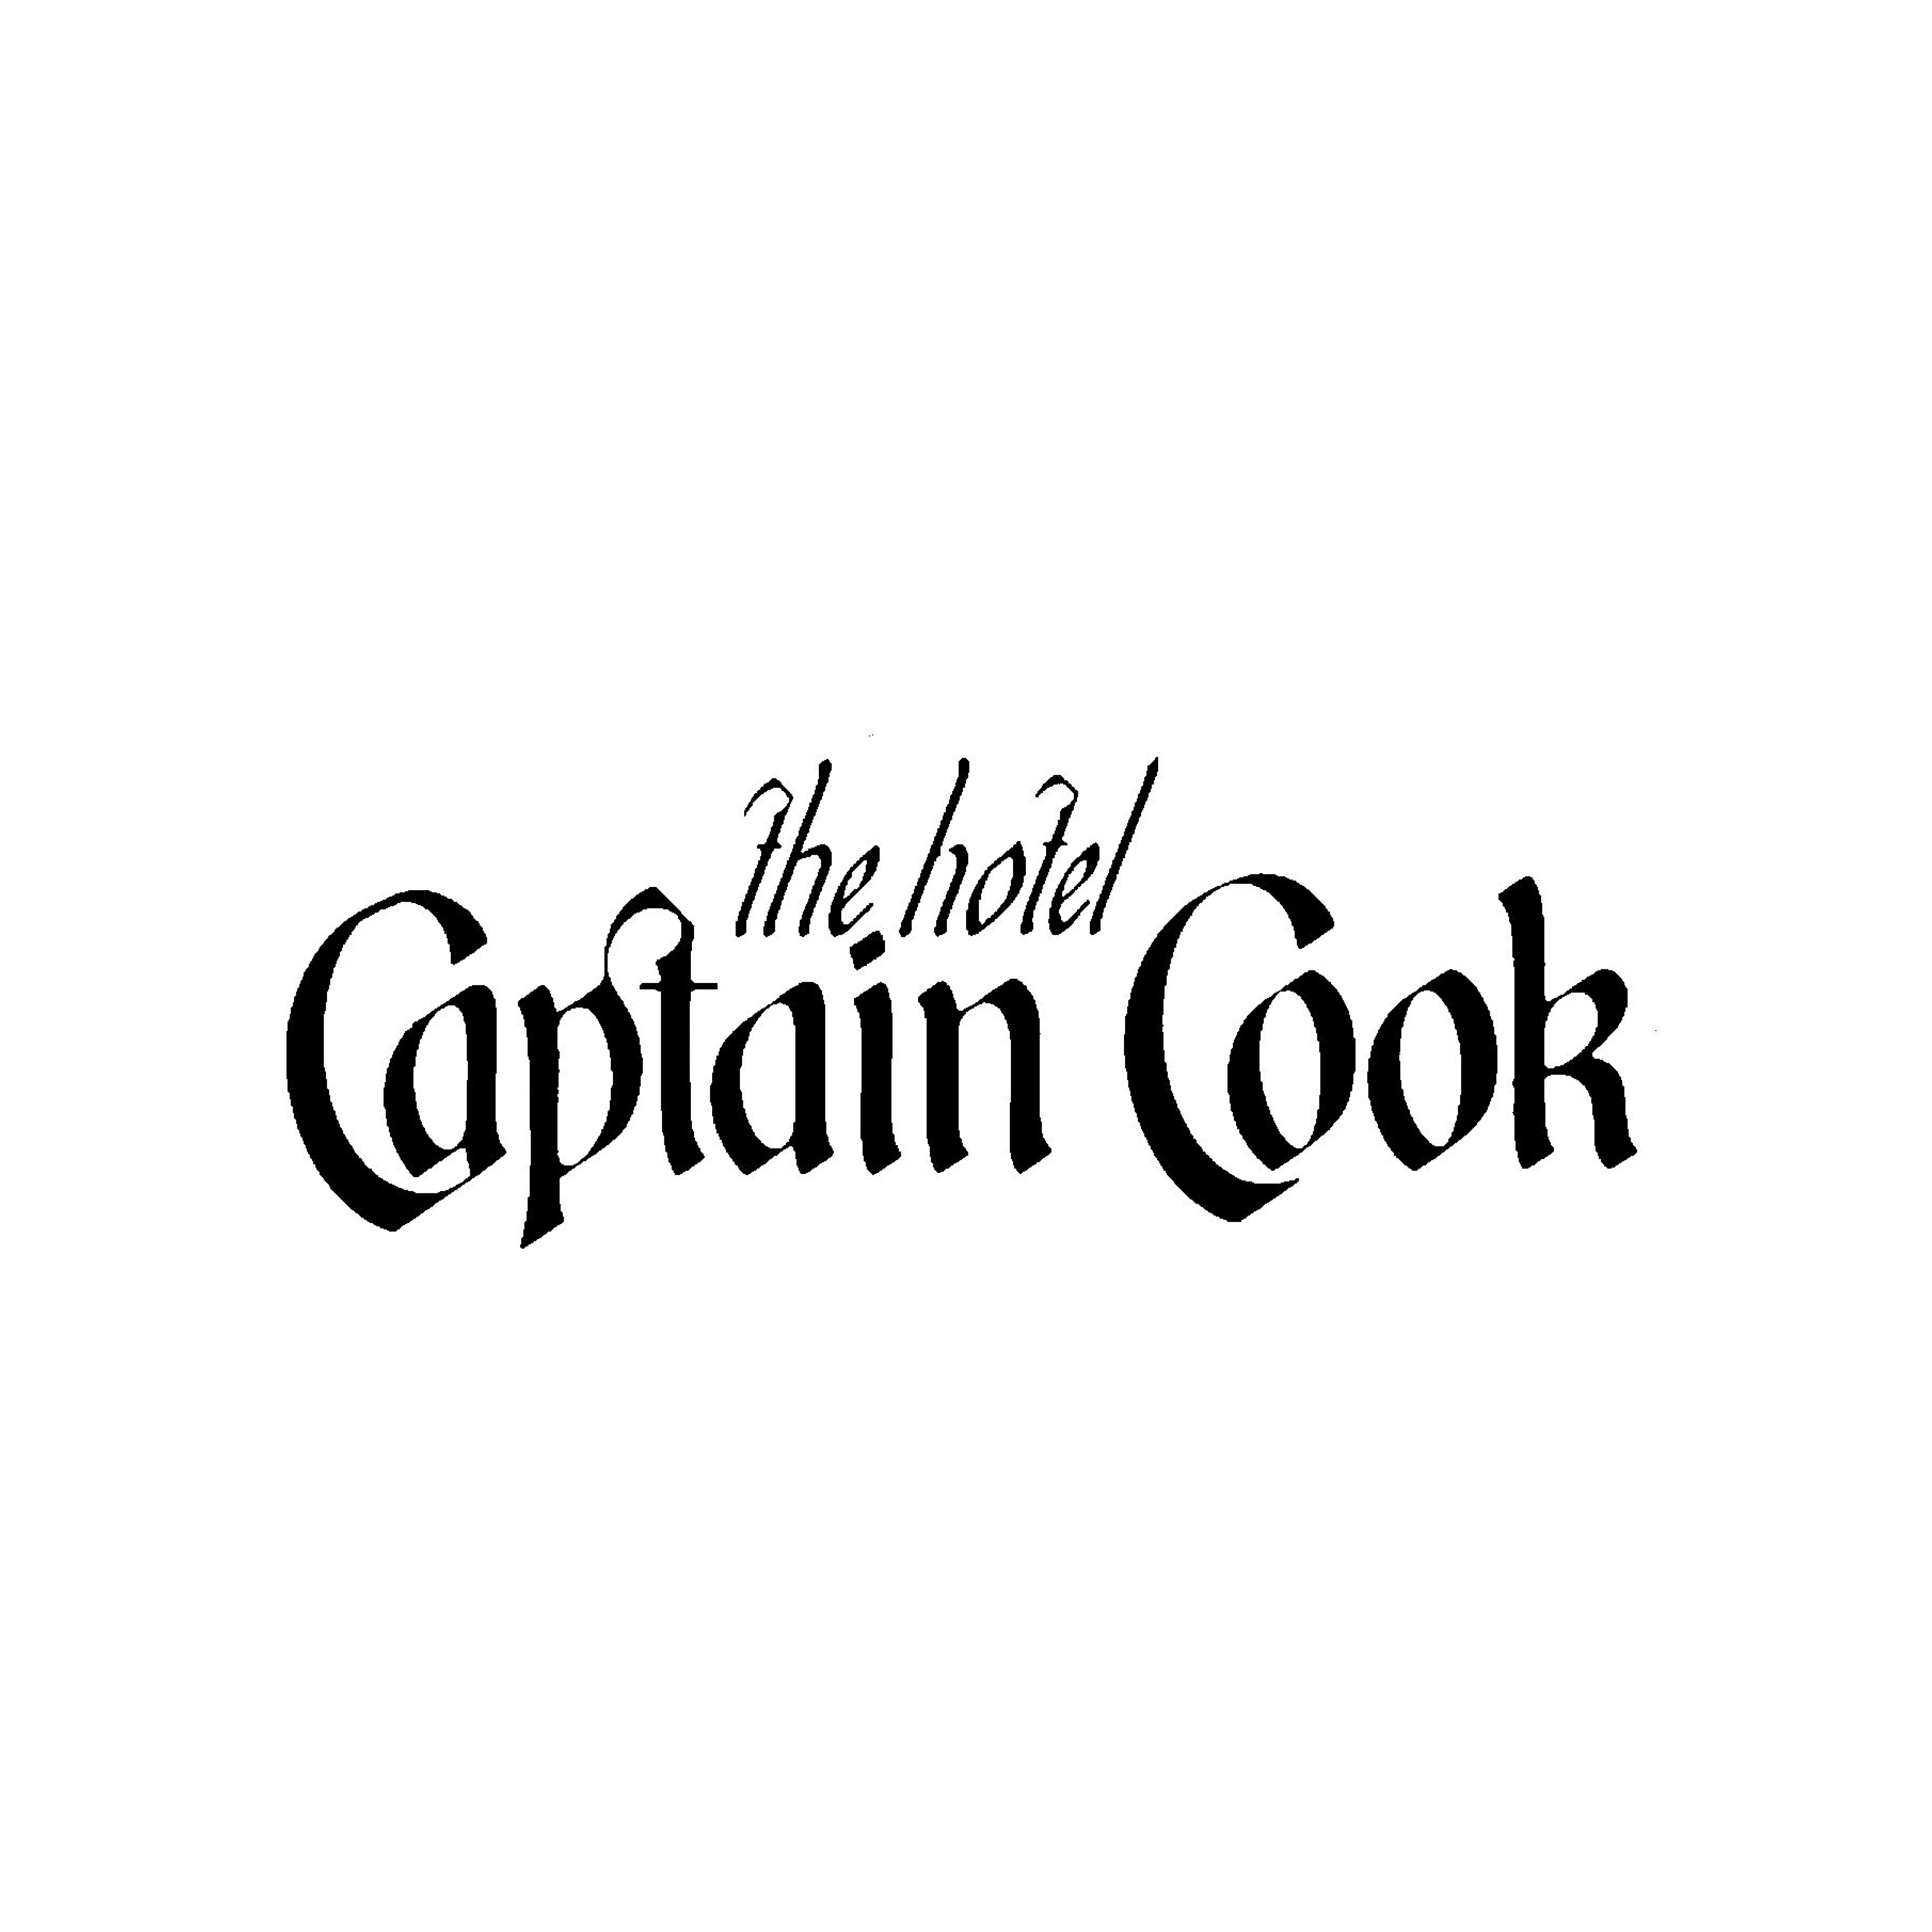 Hotel Captain Cook logo